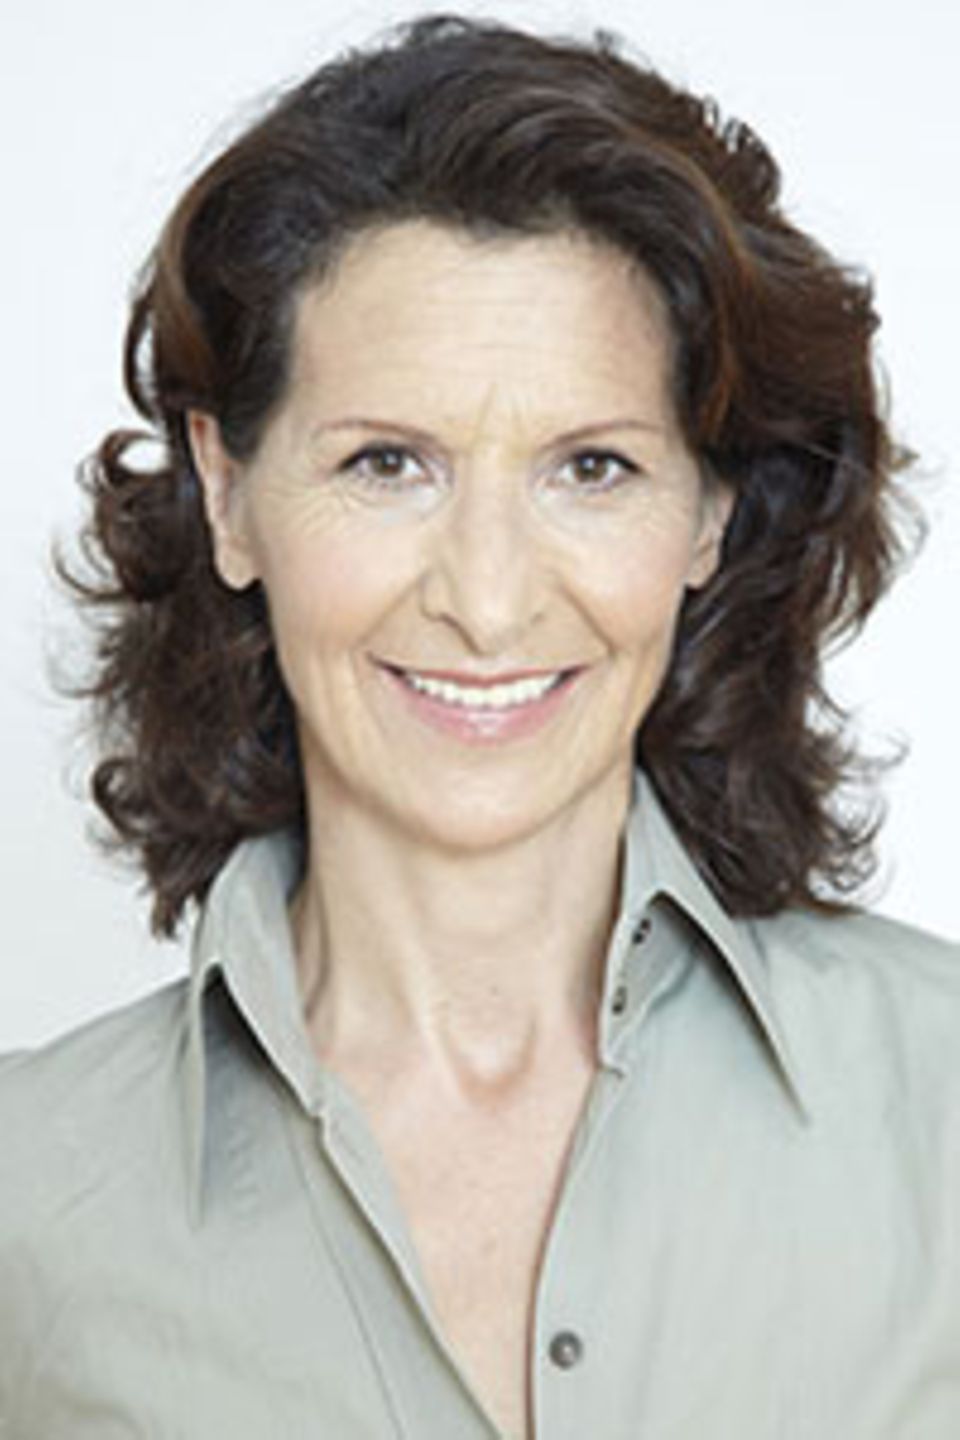 Antonia Rados, promovierte Politologin, ist Deutschlands bekannteste TV-Reporterin. Für ihre Arbeit in Krisenregionen wurde sie mehrfach ausgezeichnet. Die gebürtige Österreicherin lebt in Paris.